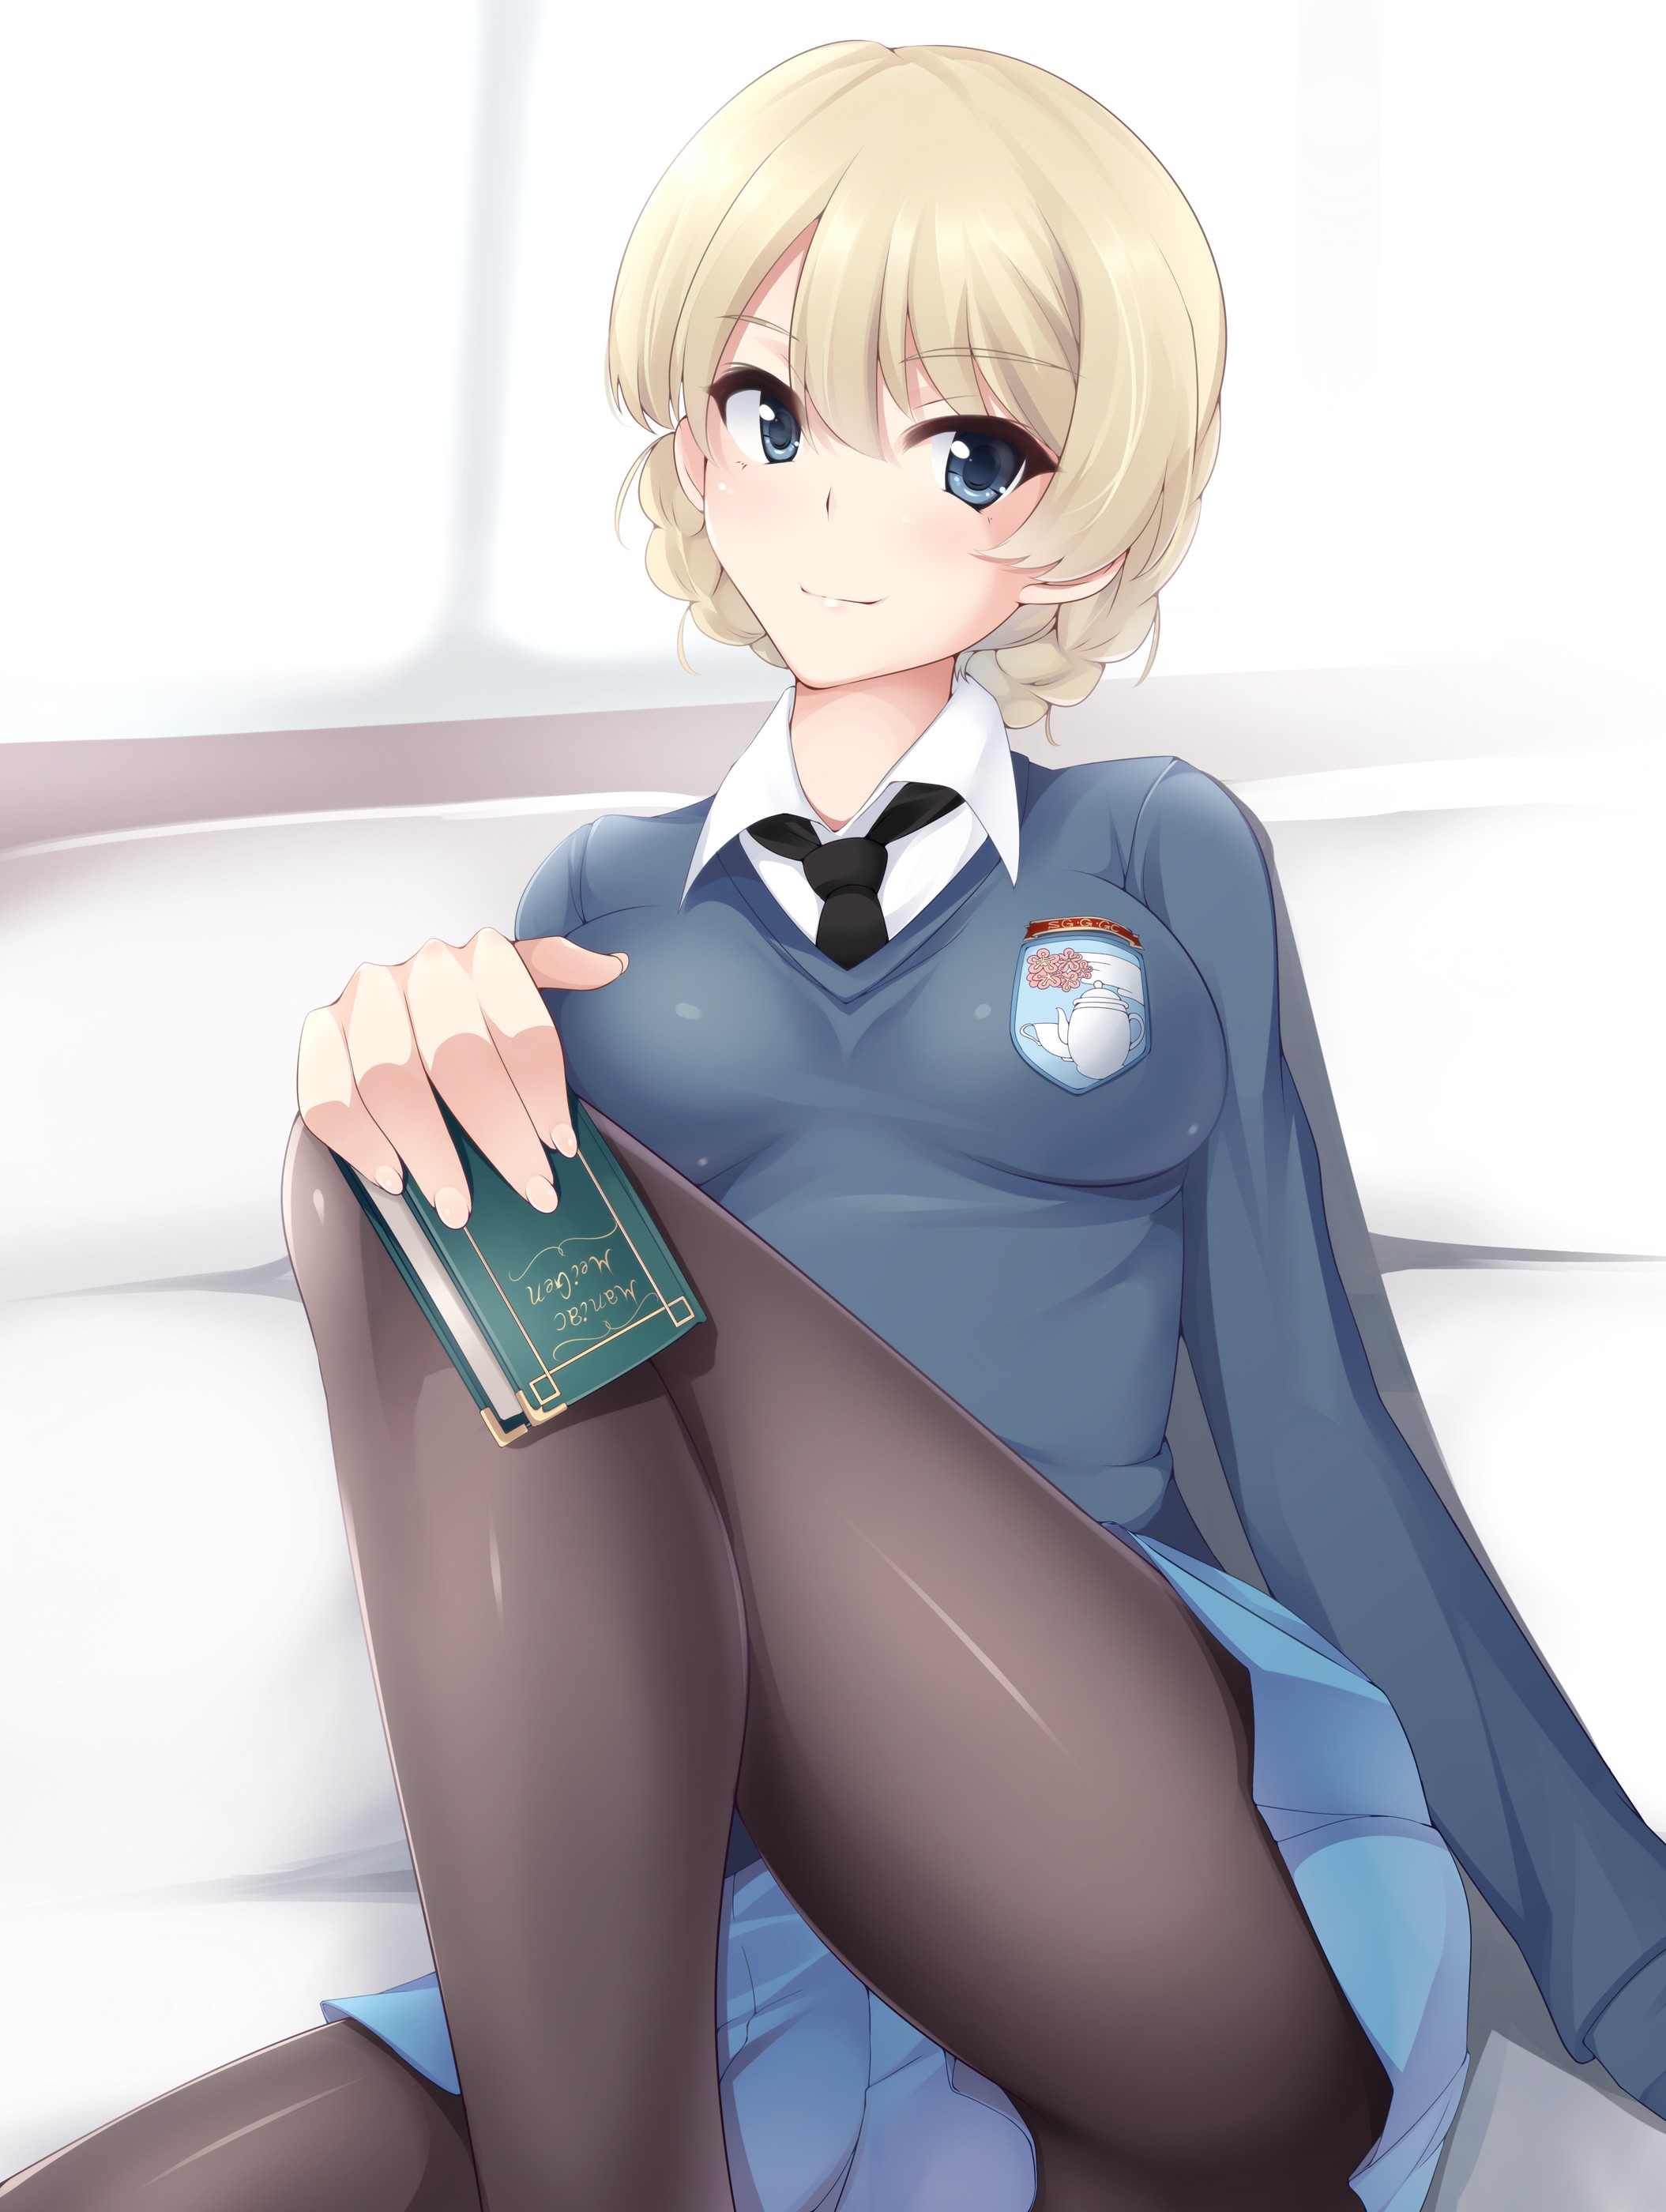 Anime Anime Girls Girls Und Panzer Darjeeling Short Hair Blonde Blue Eyes Legs Sweater 2109x2800